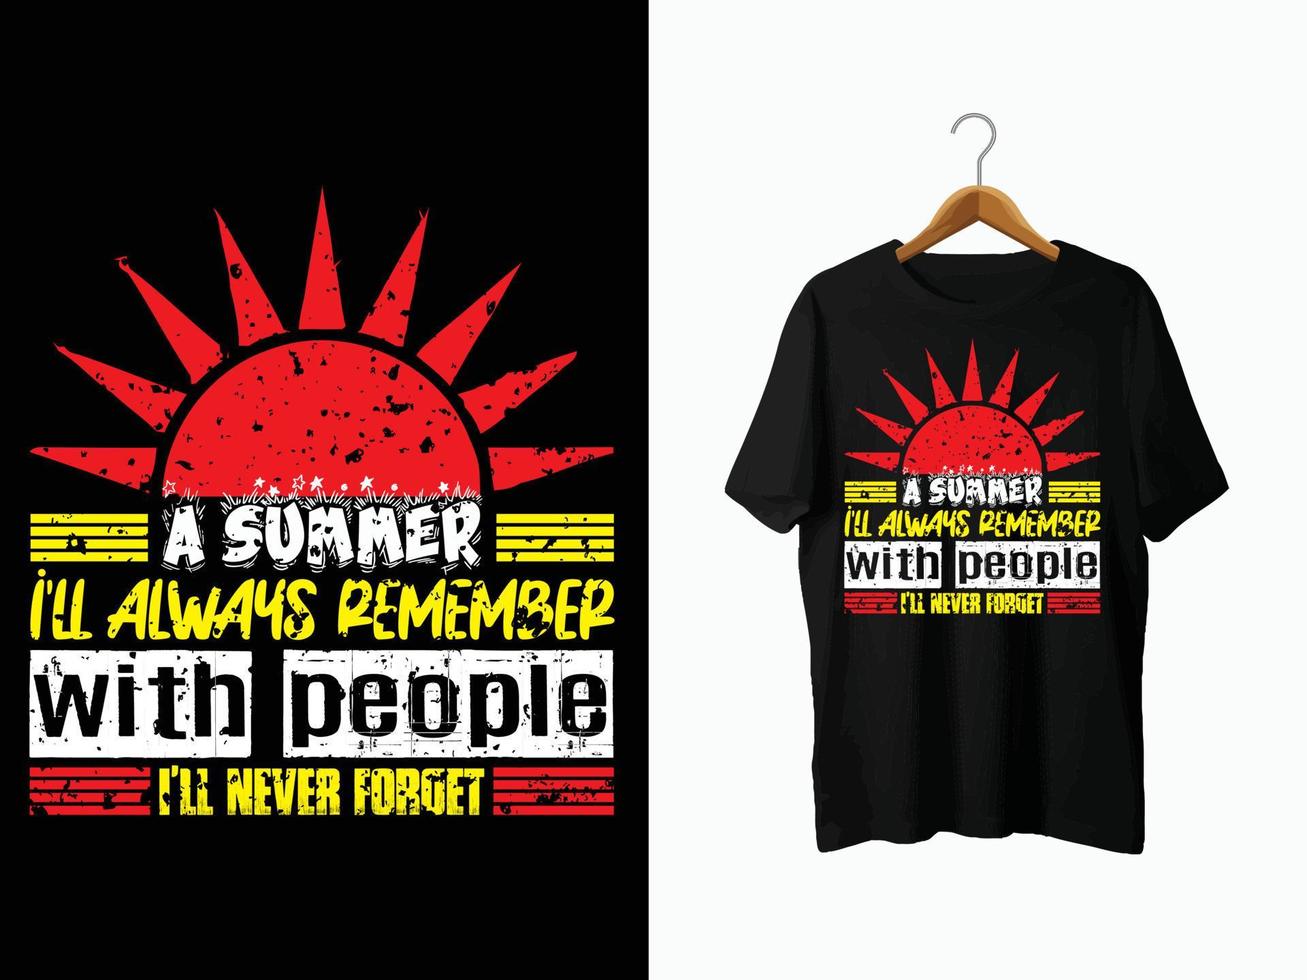 design de camiseta de verão. vetor